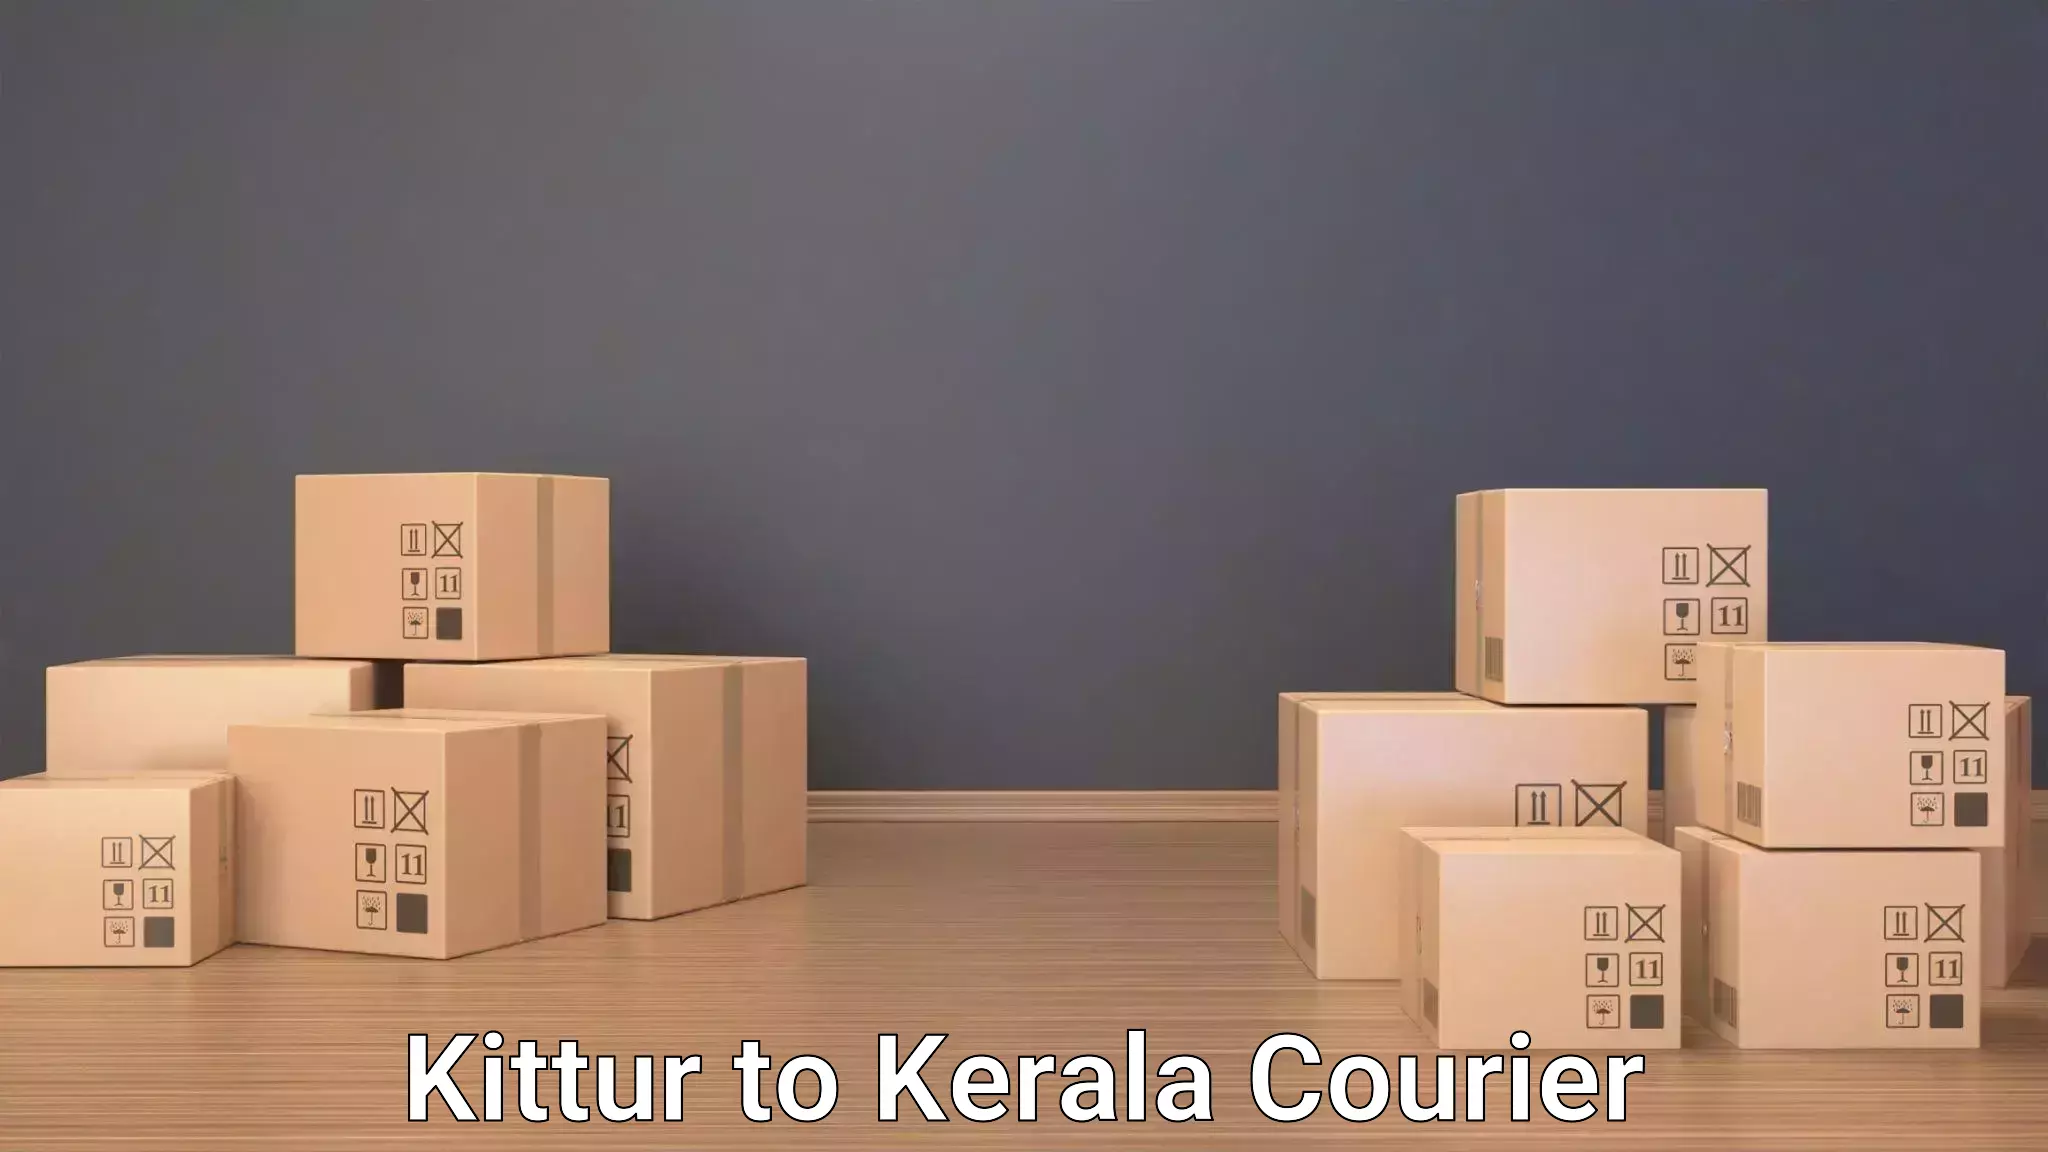 Door to door luggage delivery Kittur to Kerala